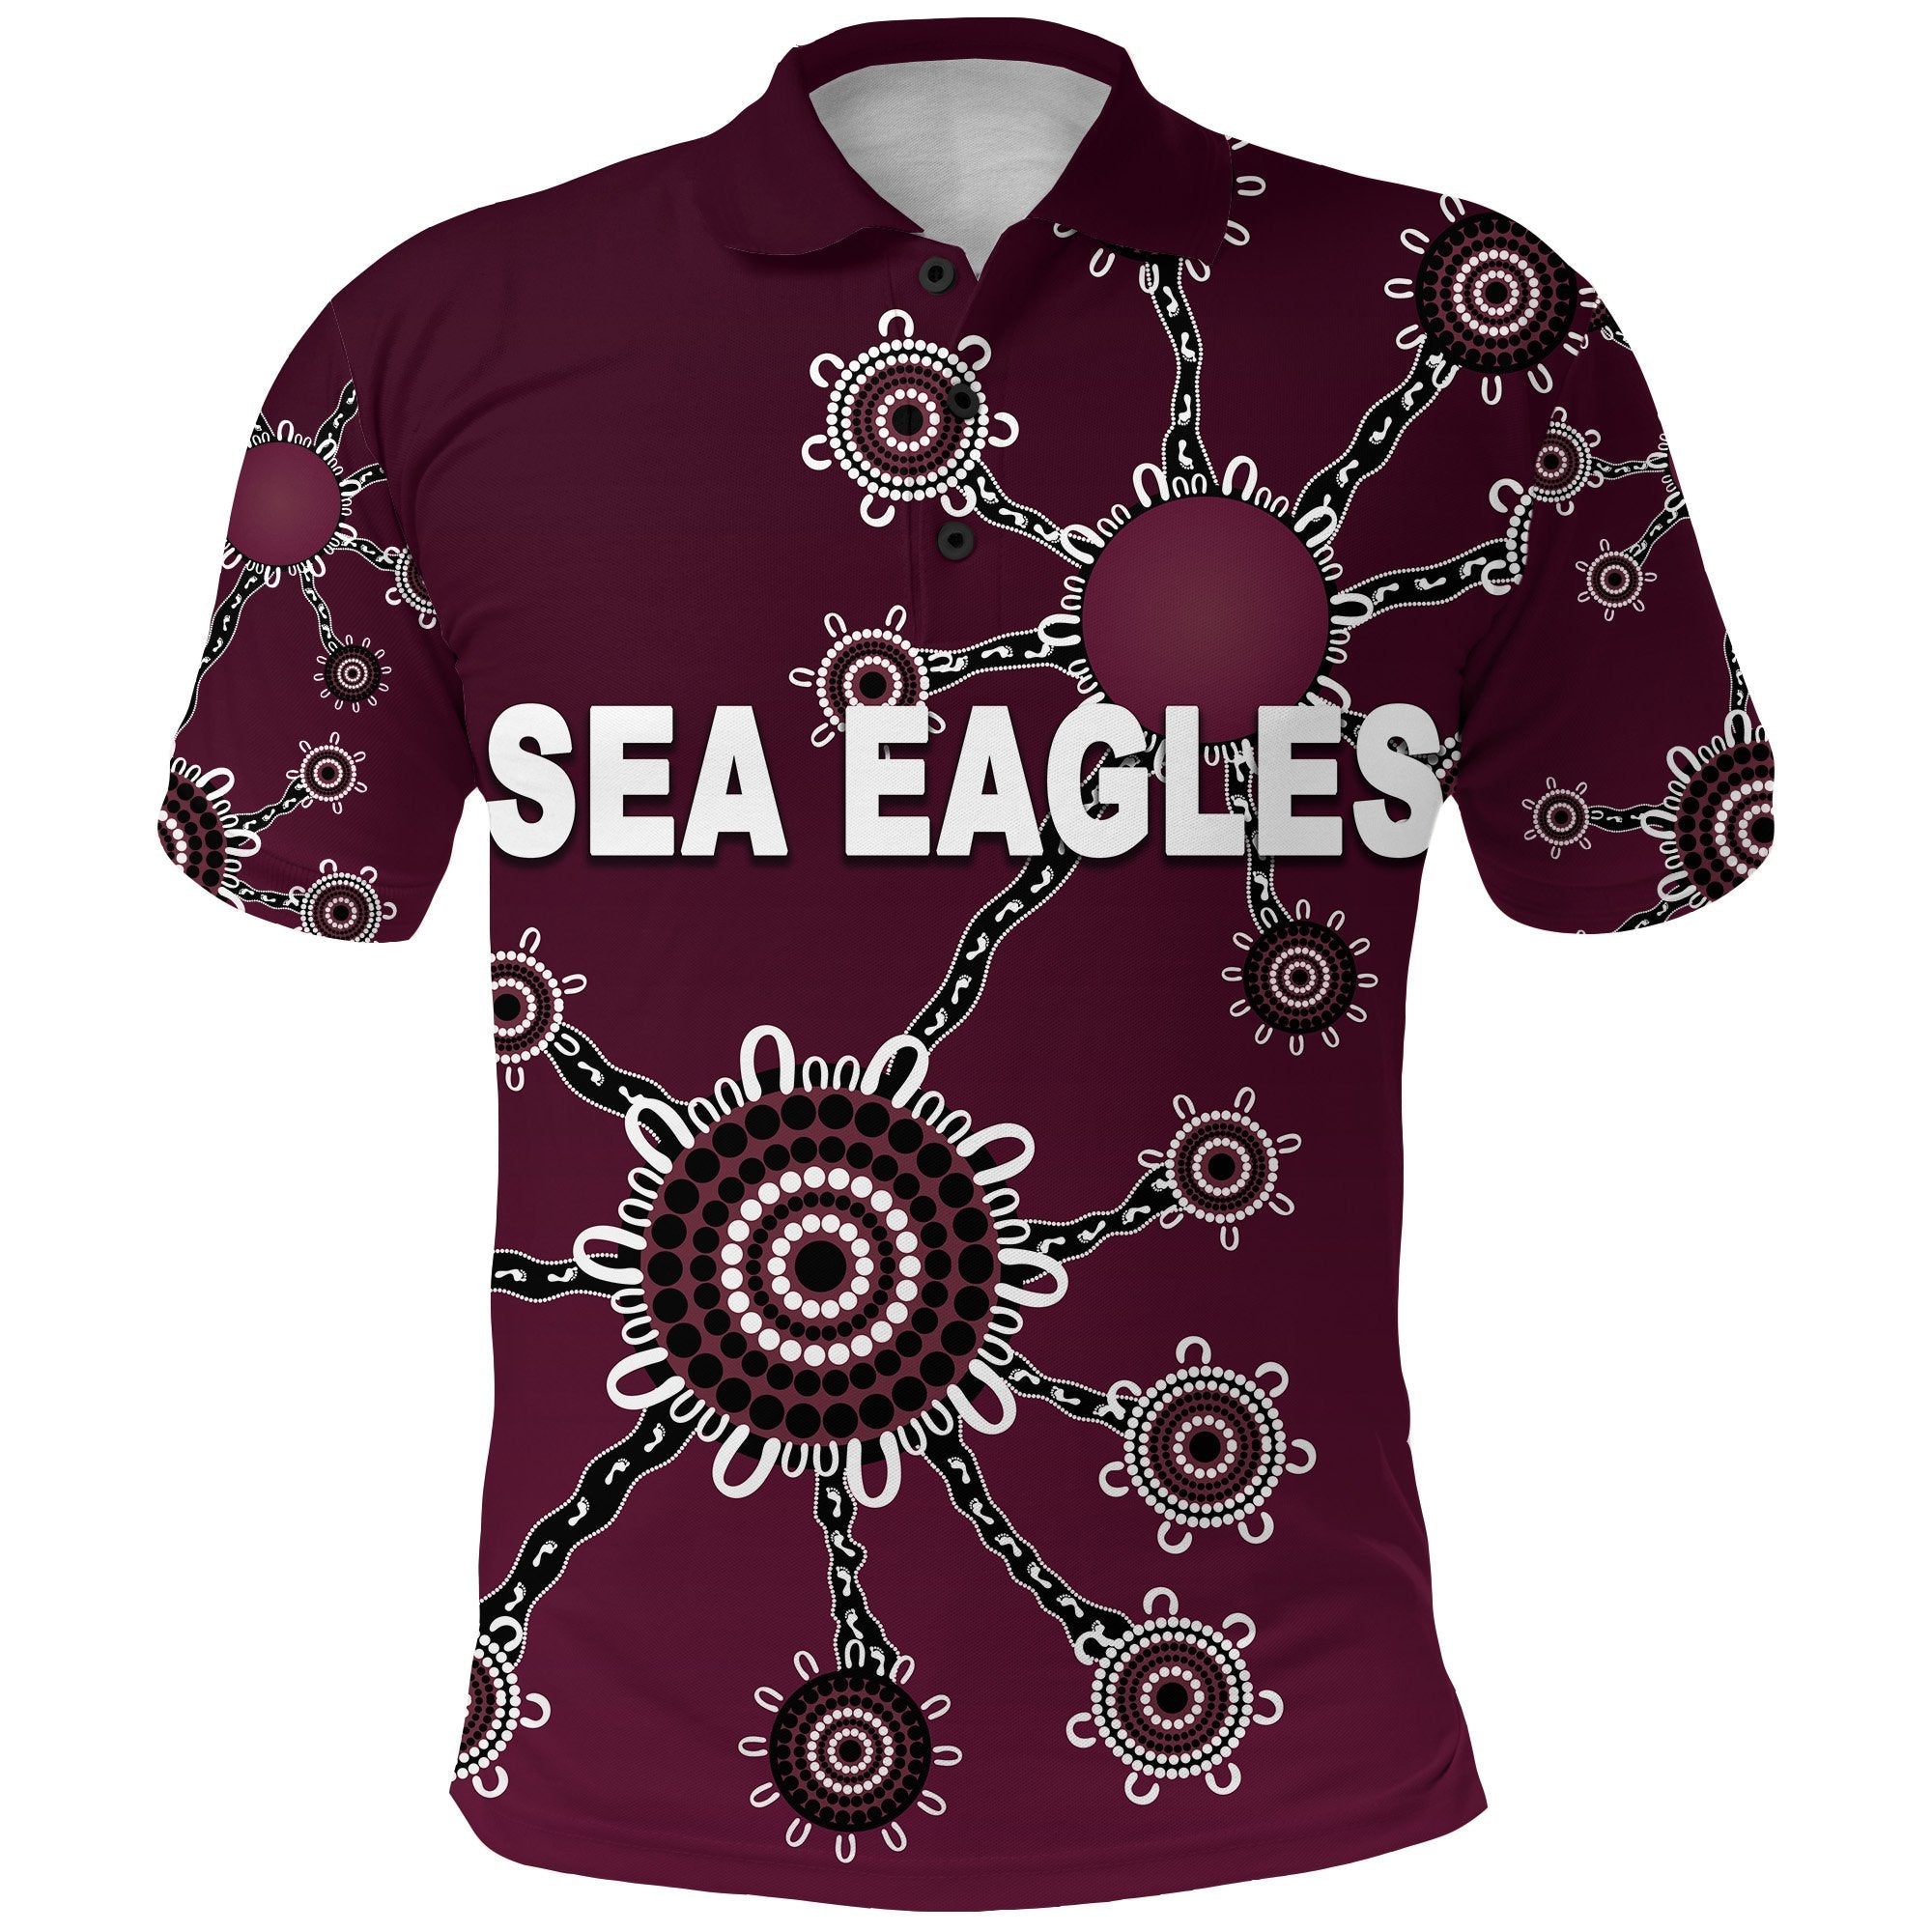 warringah-polo-shirt-sea-eagles-simple-indigenous